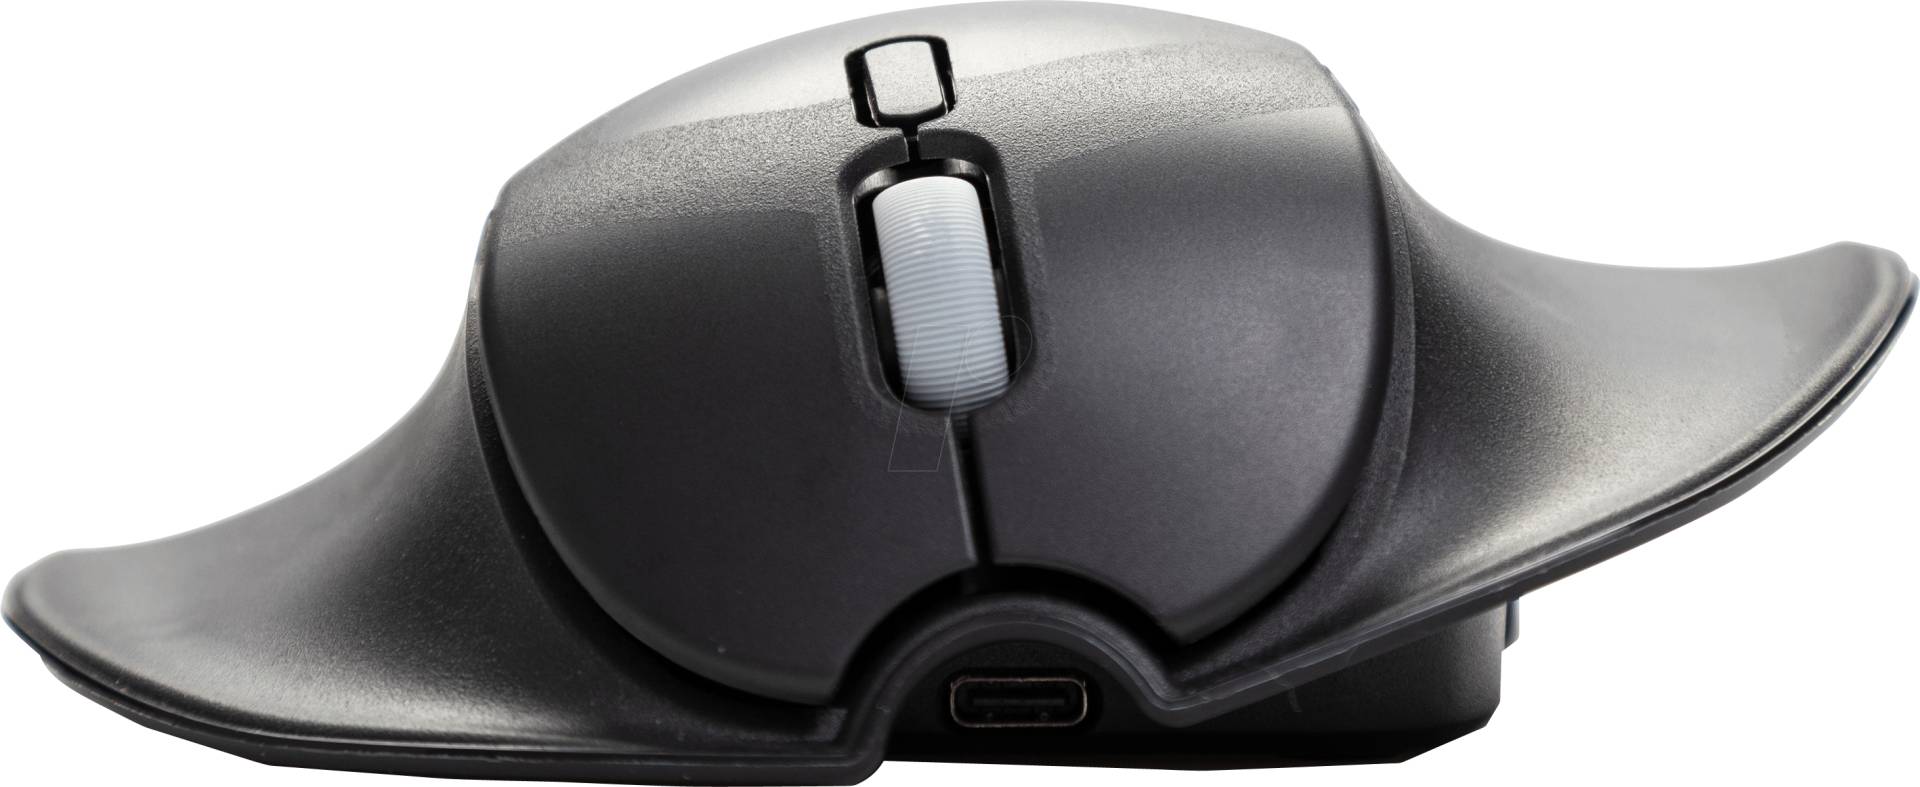 HSM SHIFT-M - Maus (Mouse), Bluetooth, ergonomisch, medium (M) von HANDSHOEMOUSE